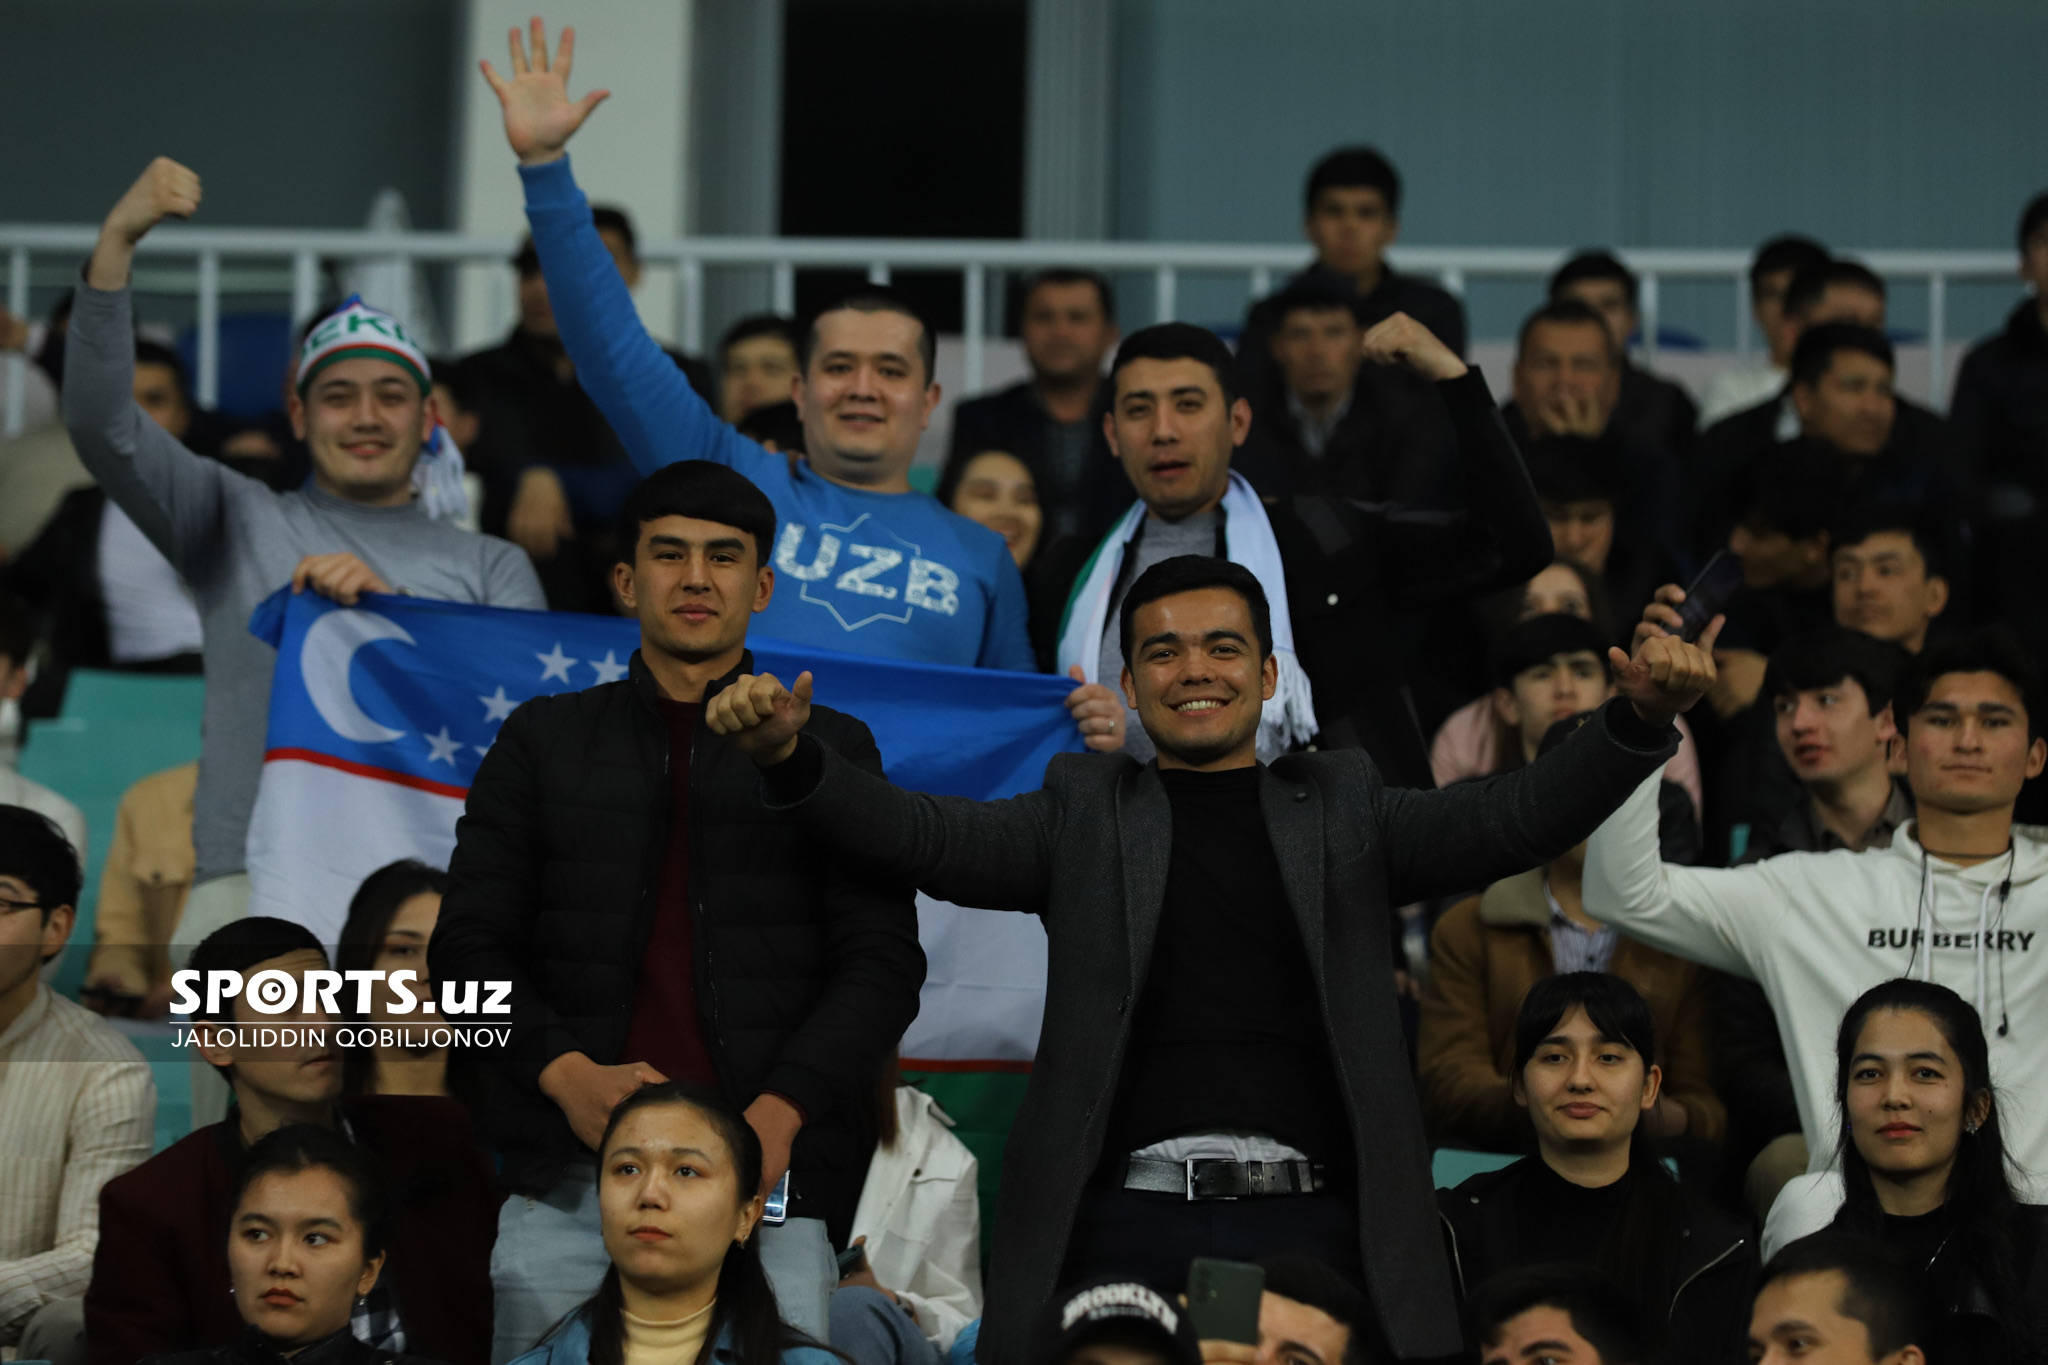 Uzbekistan - Iraq fans